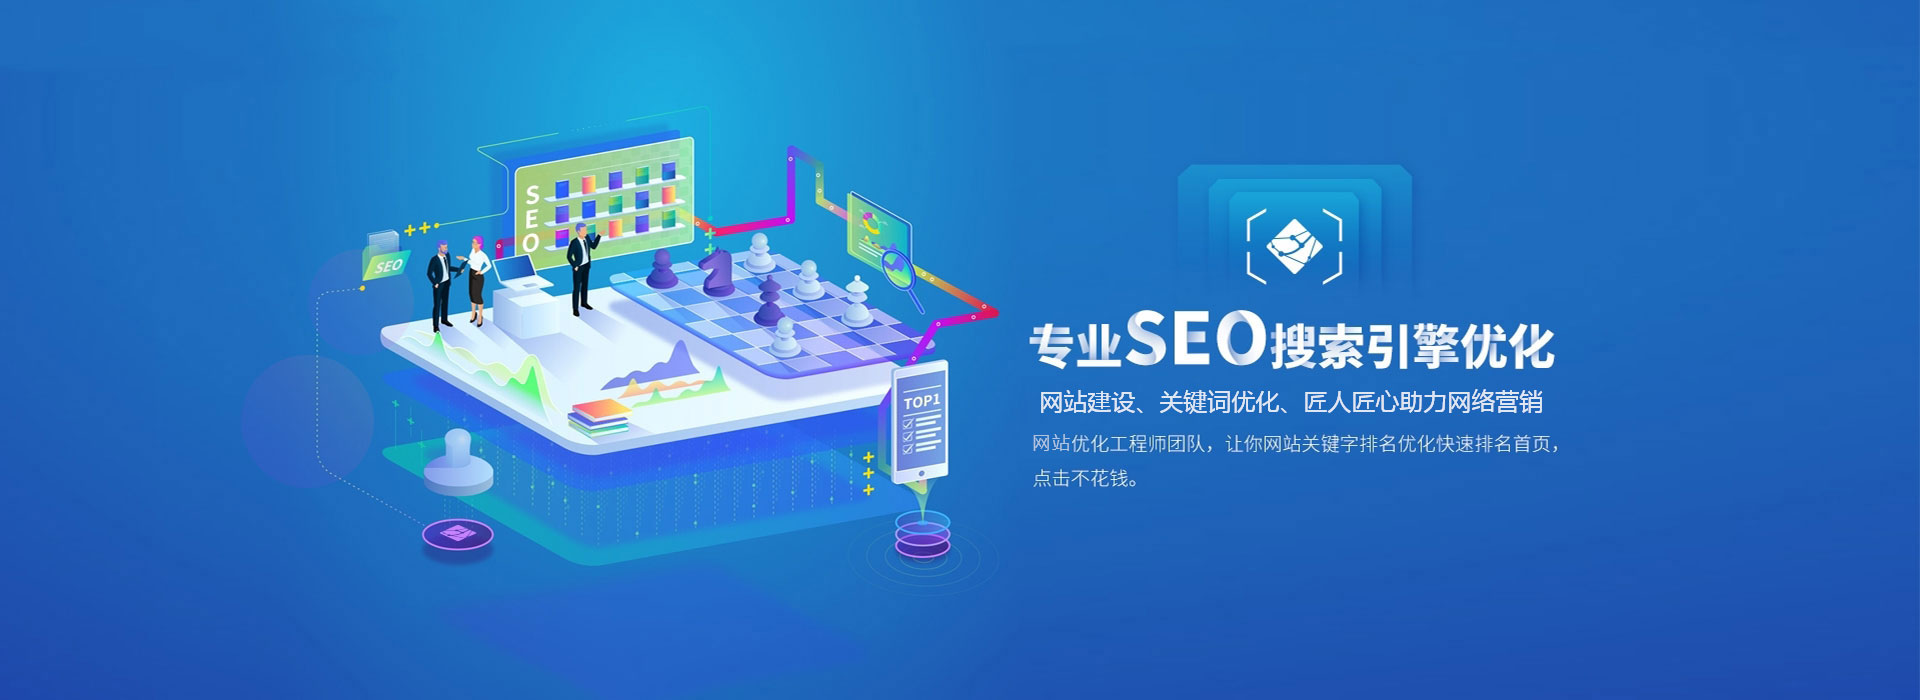 网络营销、天津网站建设制作与开发